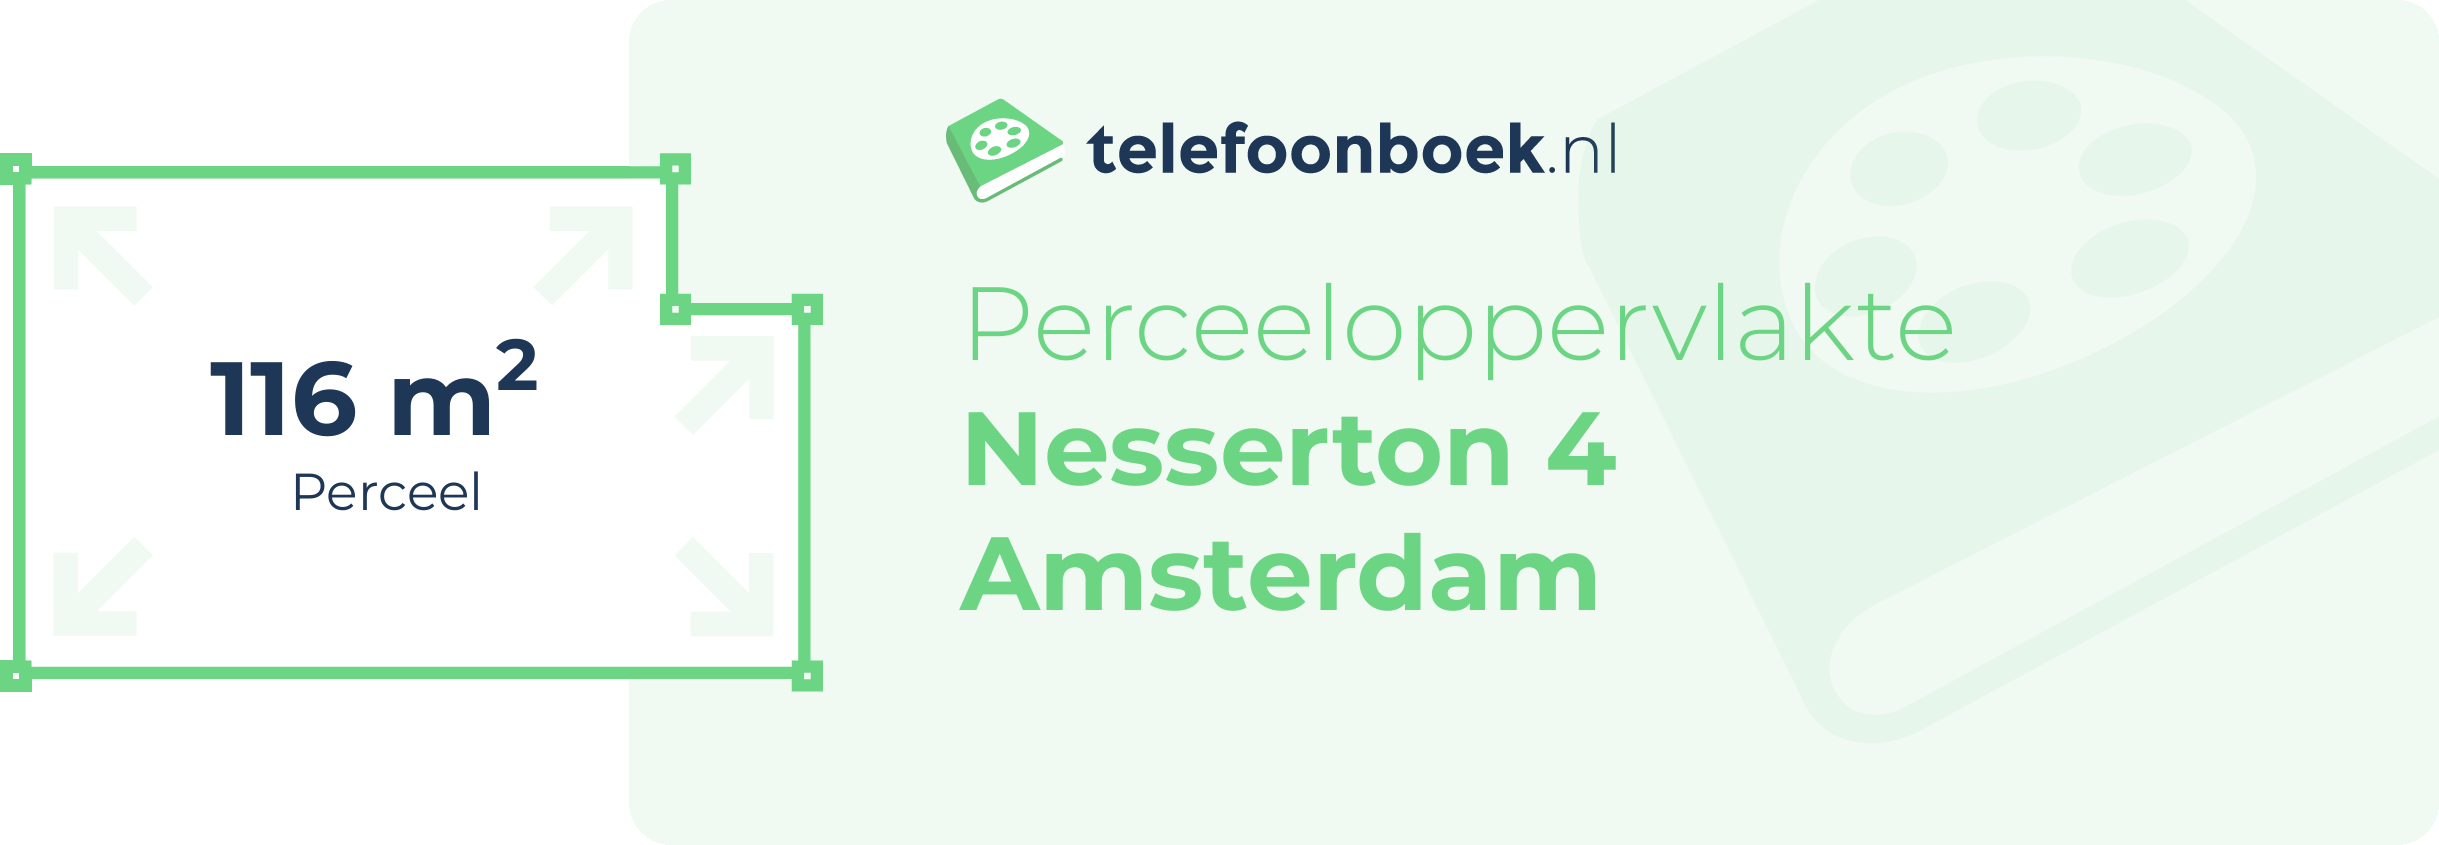 Perceeloppervlakte Nesserton 4 Amsterdam